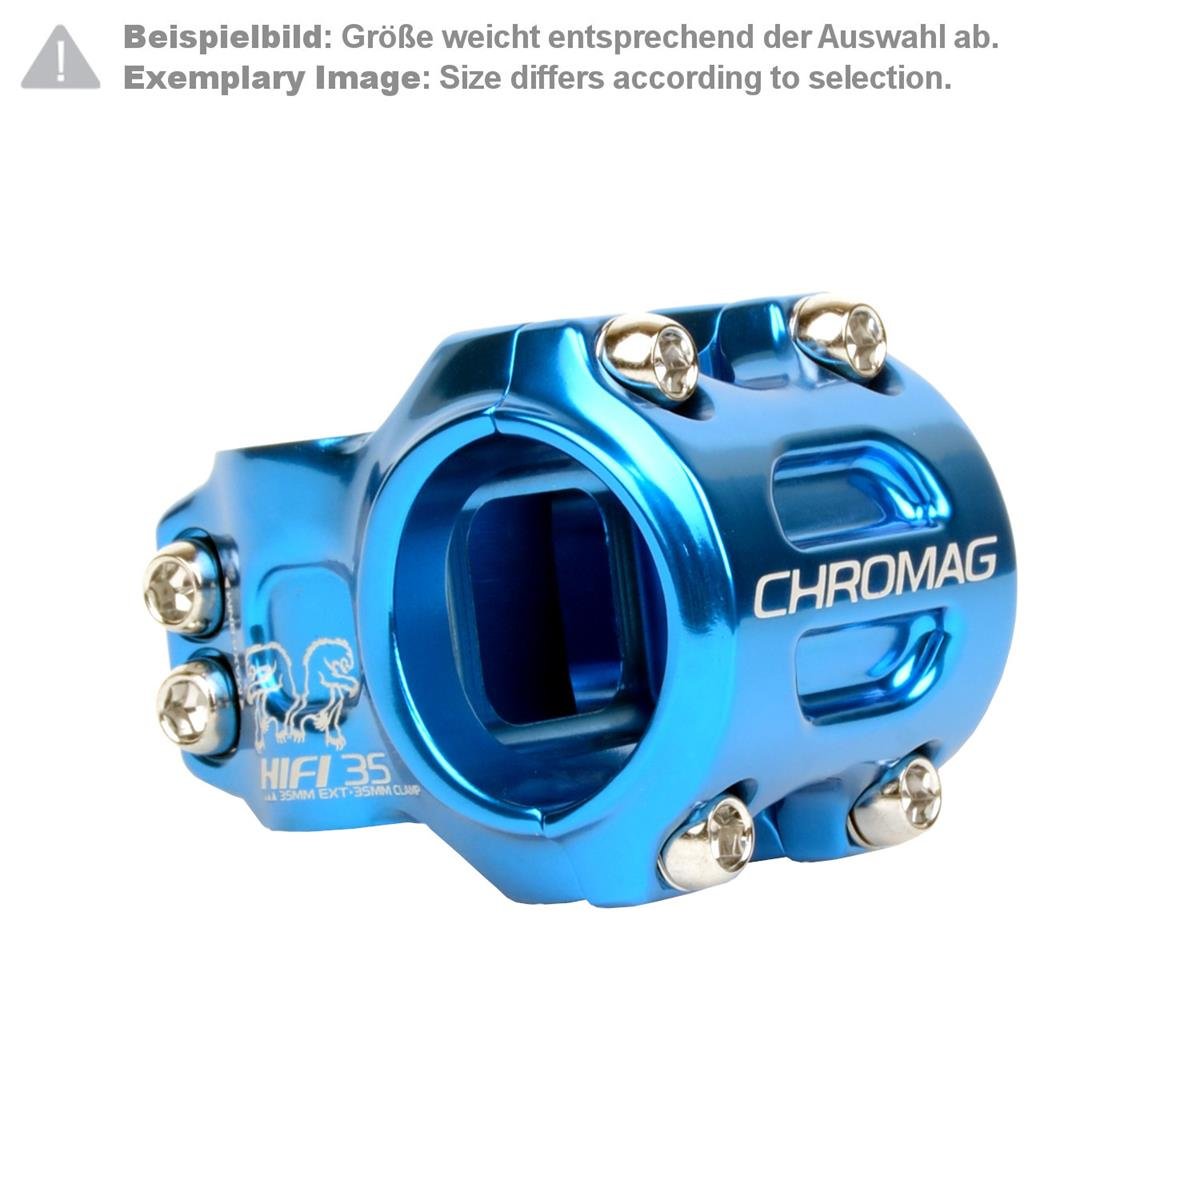 Chromag MTB Stem HIFI 35.0 mm, 35 mm Reach, Blue